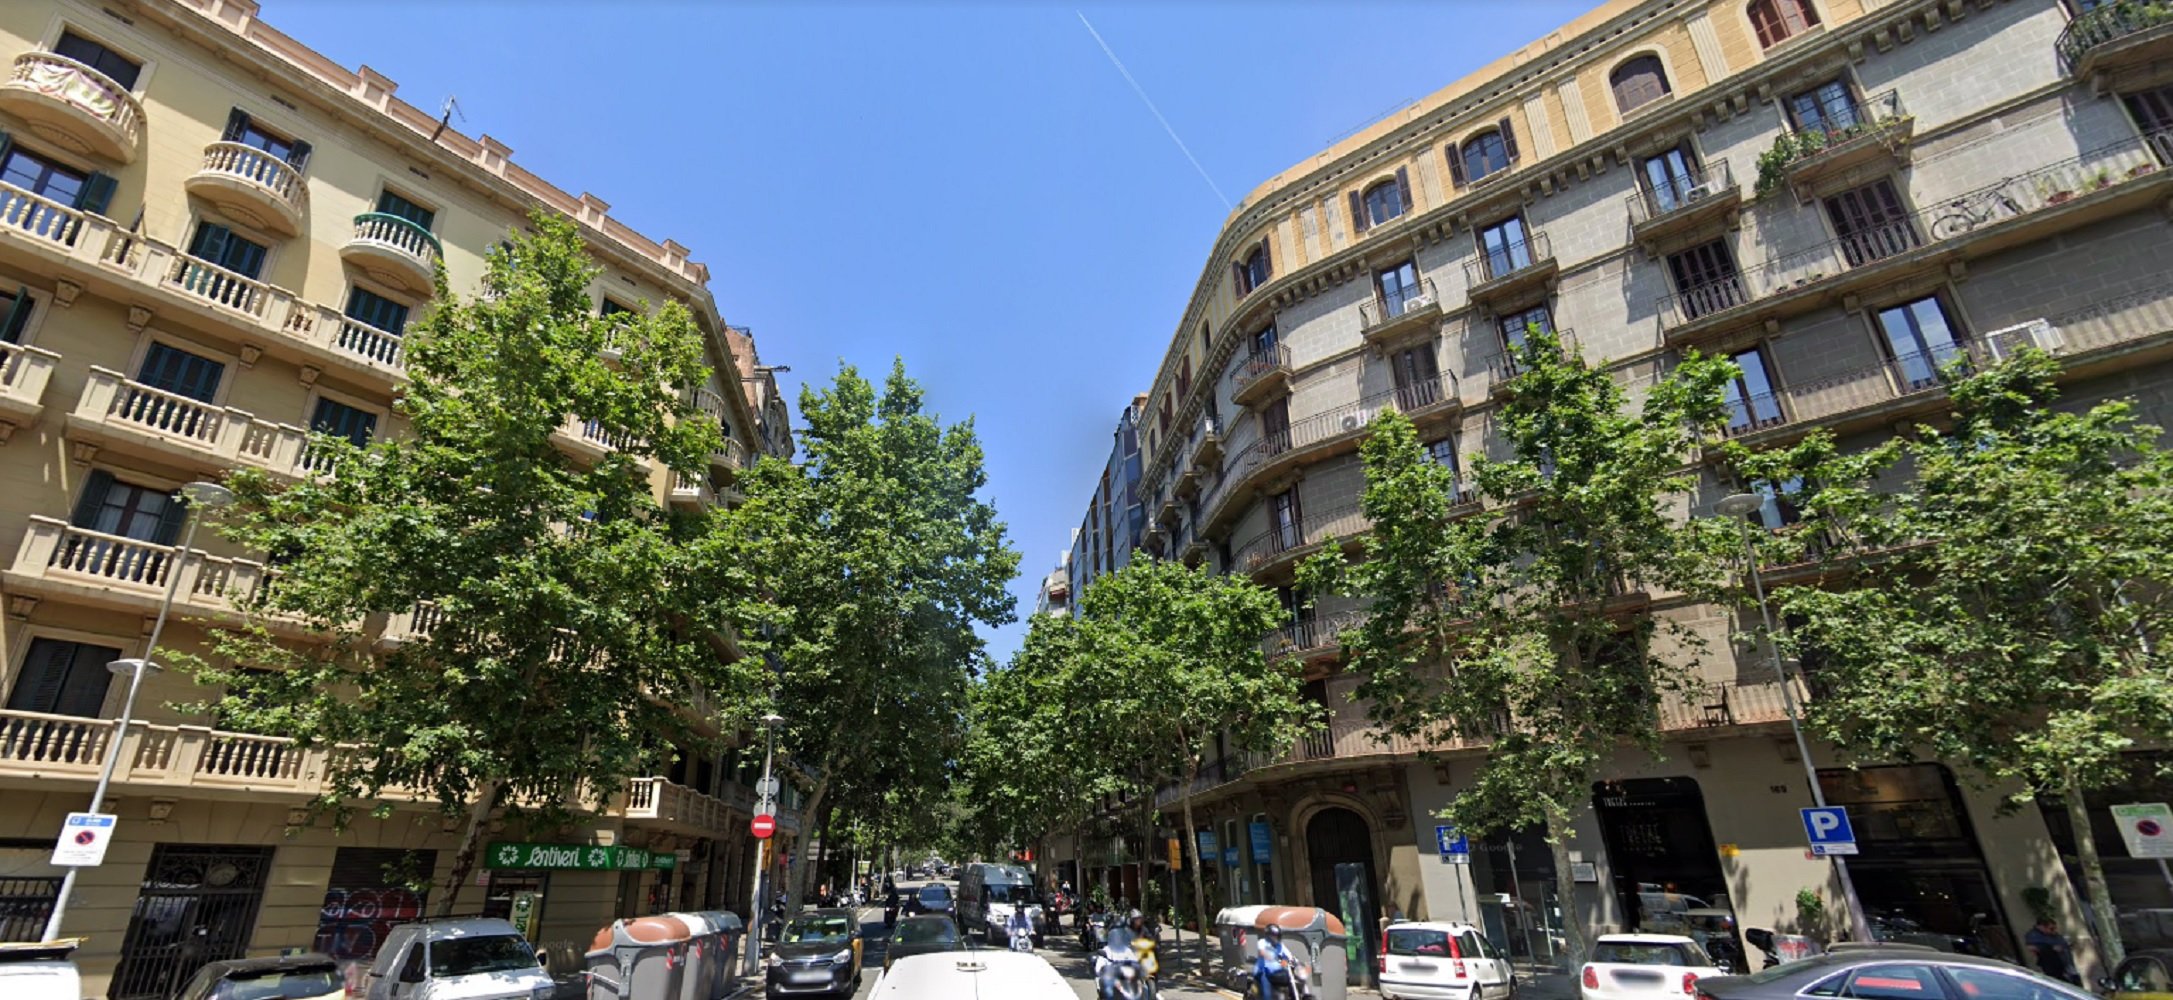 Més pressió al cotxe a Barcelona: Muntaner i Aribau perdran un carril de circulació